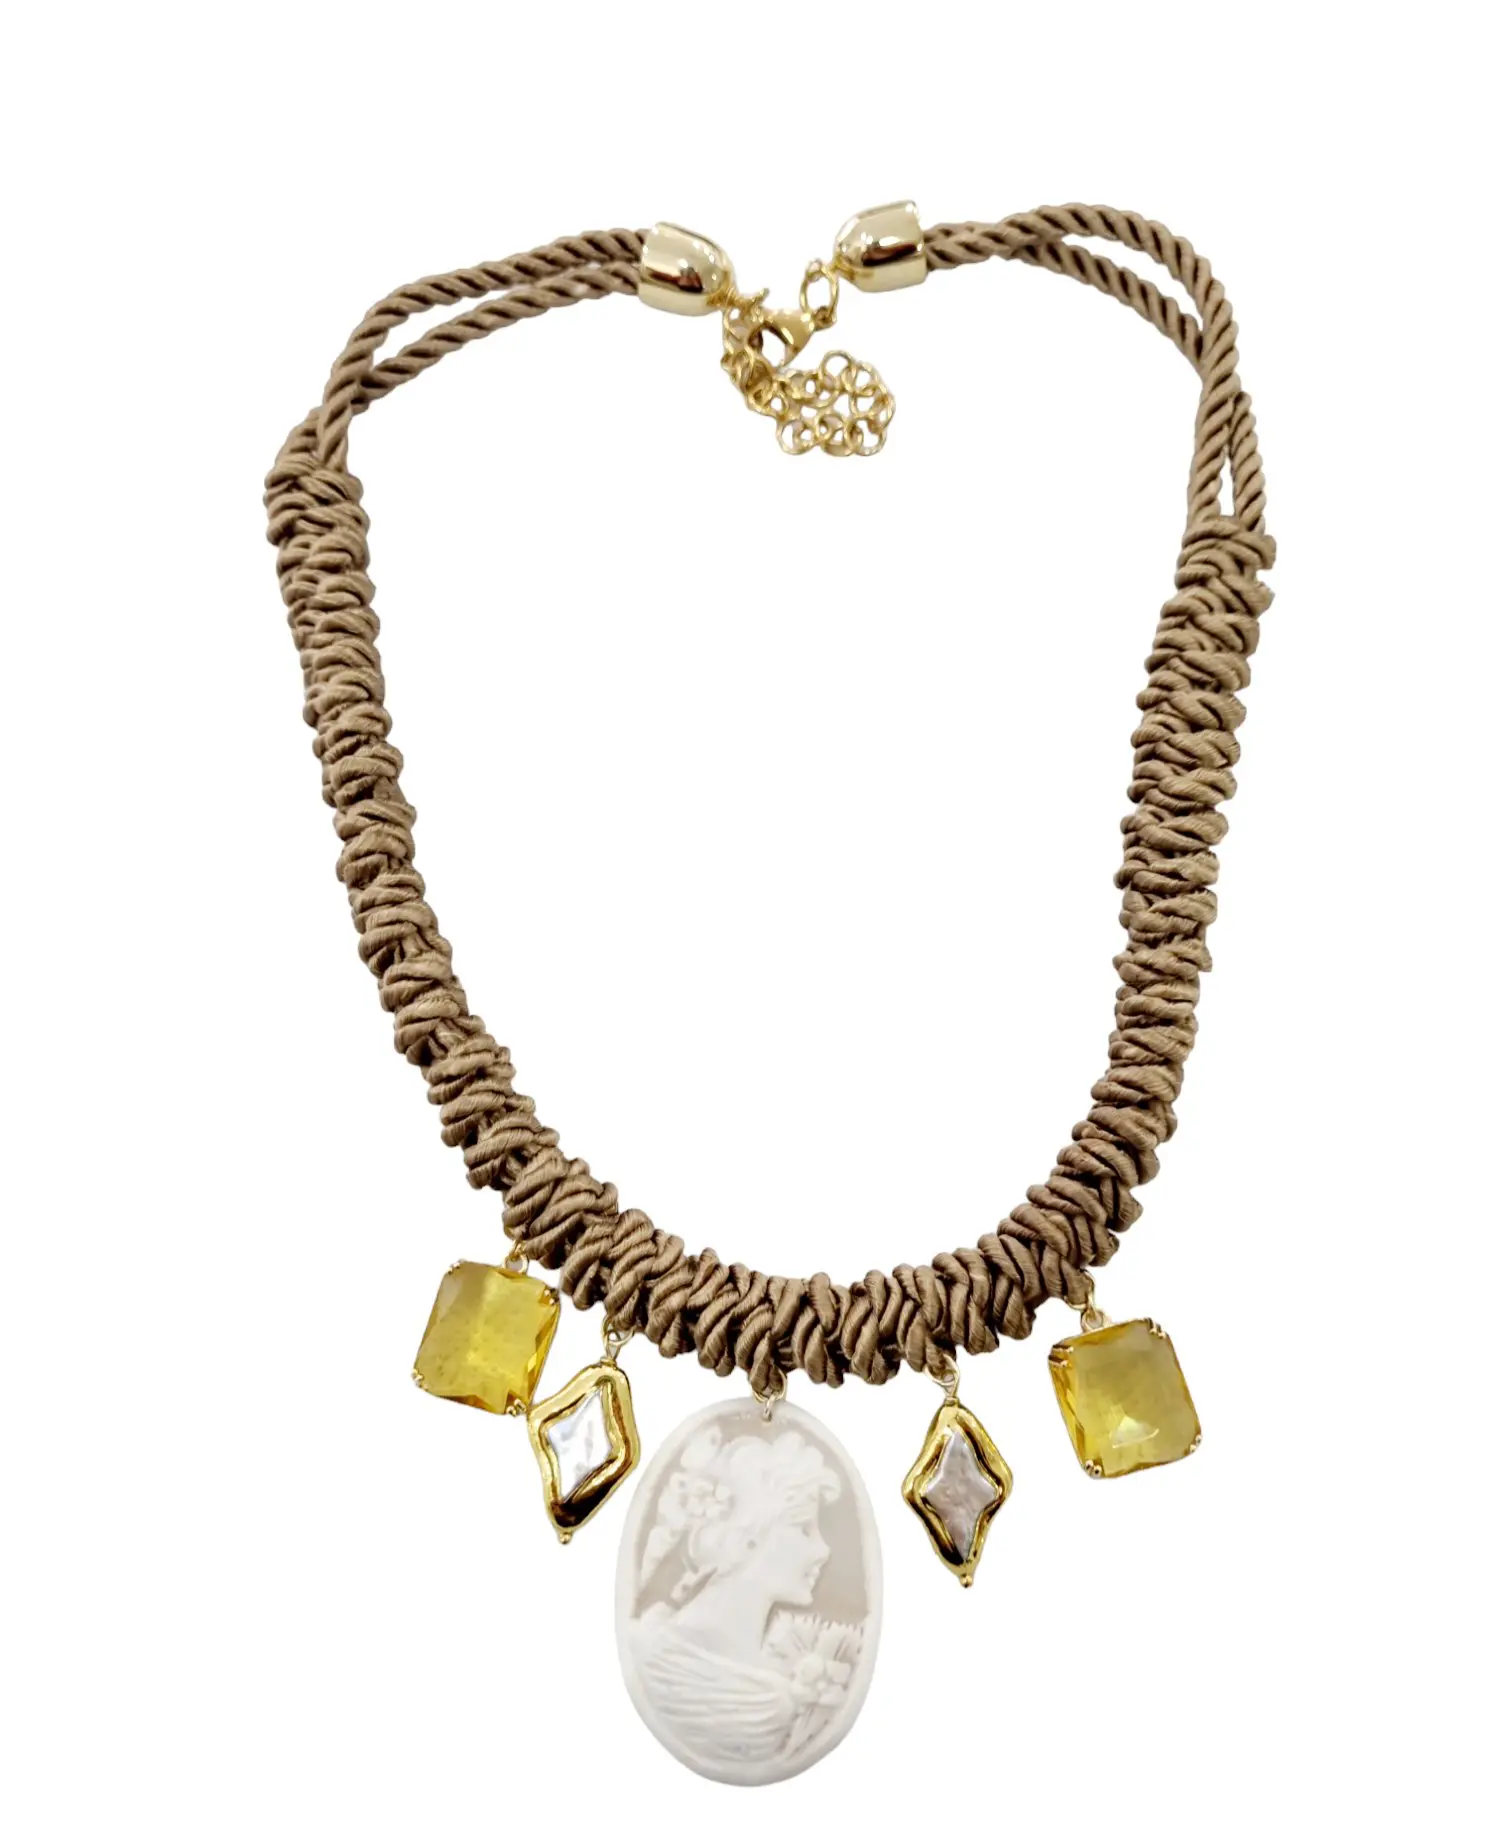 Verstellbare Halskette mit Kamee, Perlen und Kristallen – Länge 54 cm